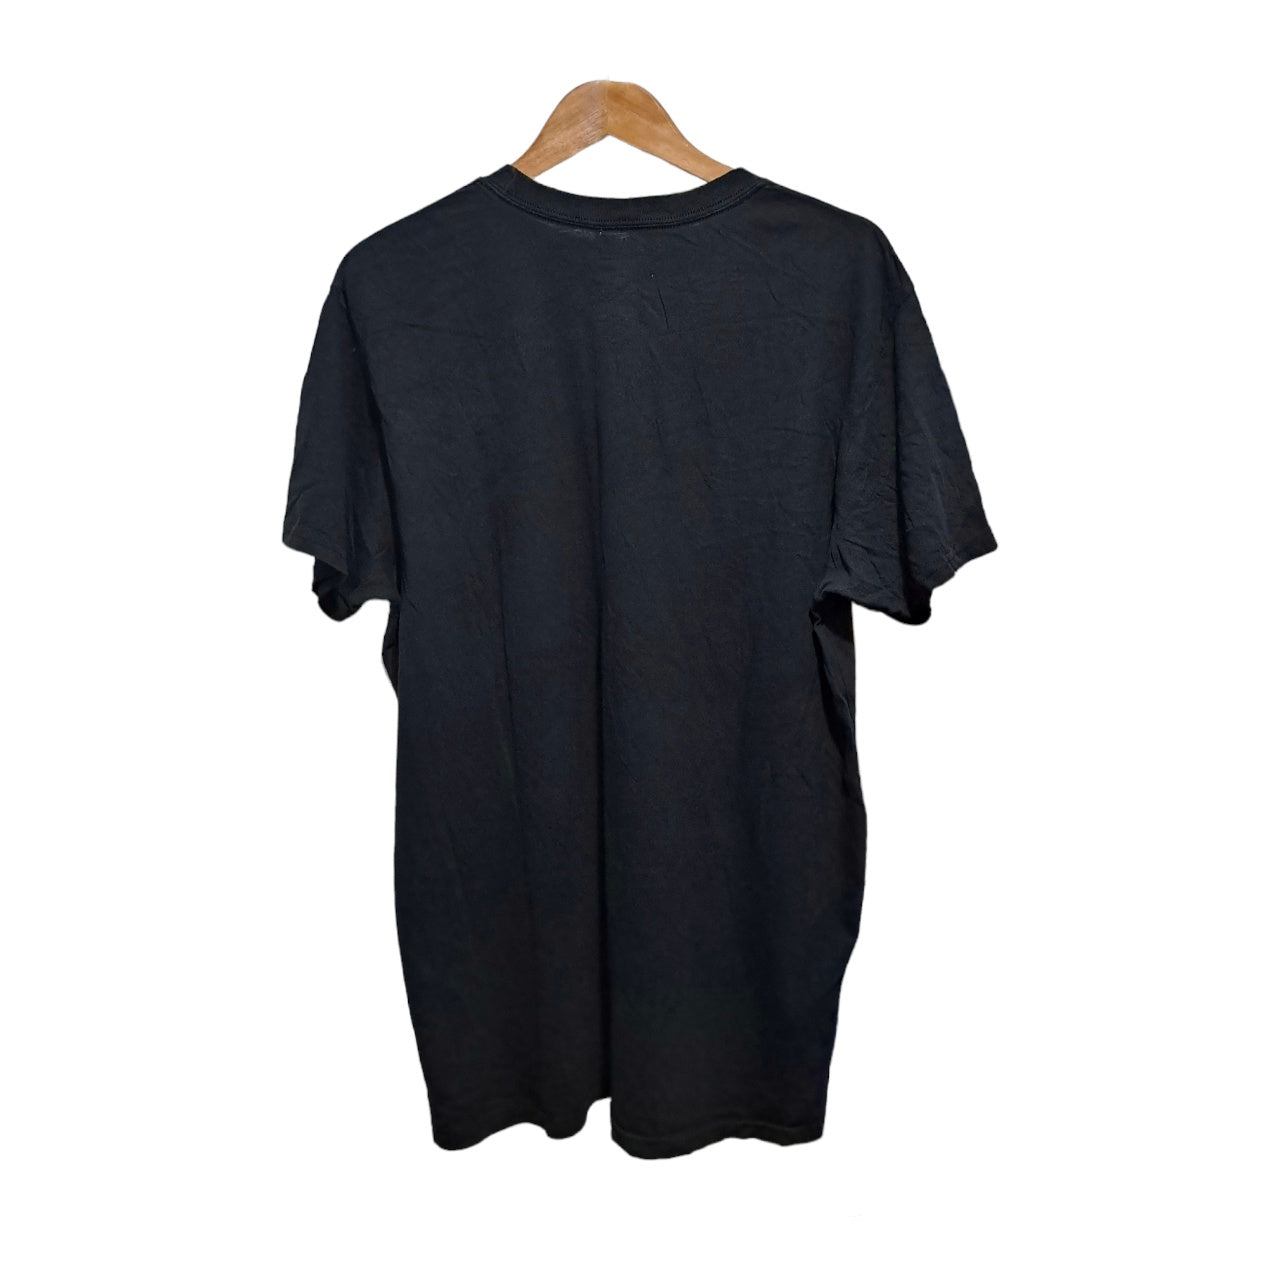 Black Billabong shirt 100% Cotton surfing shirt